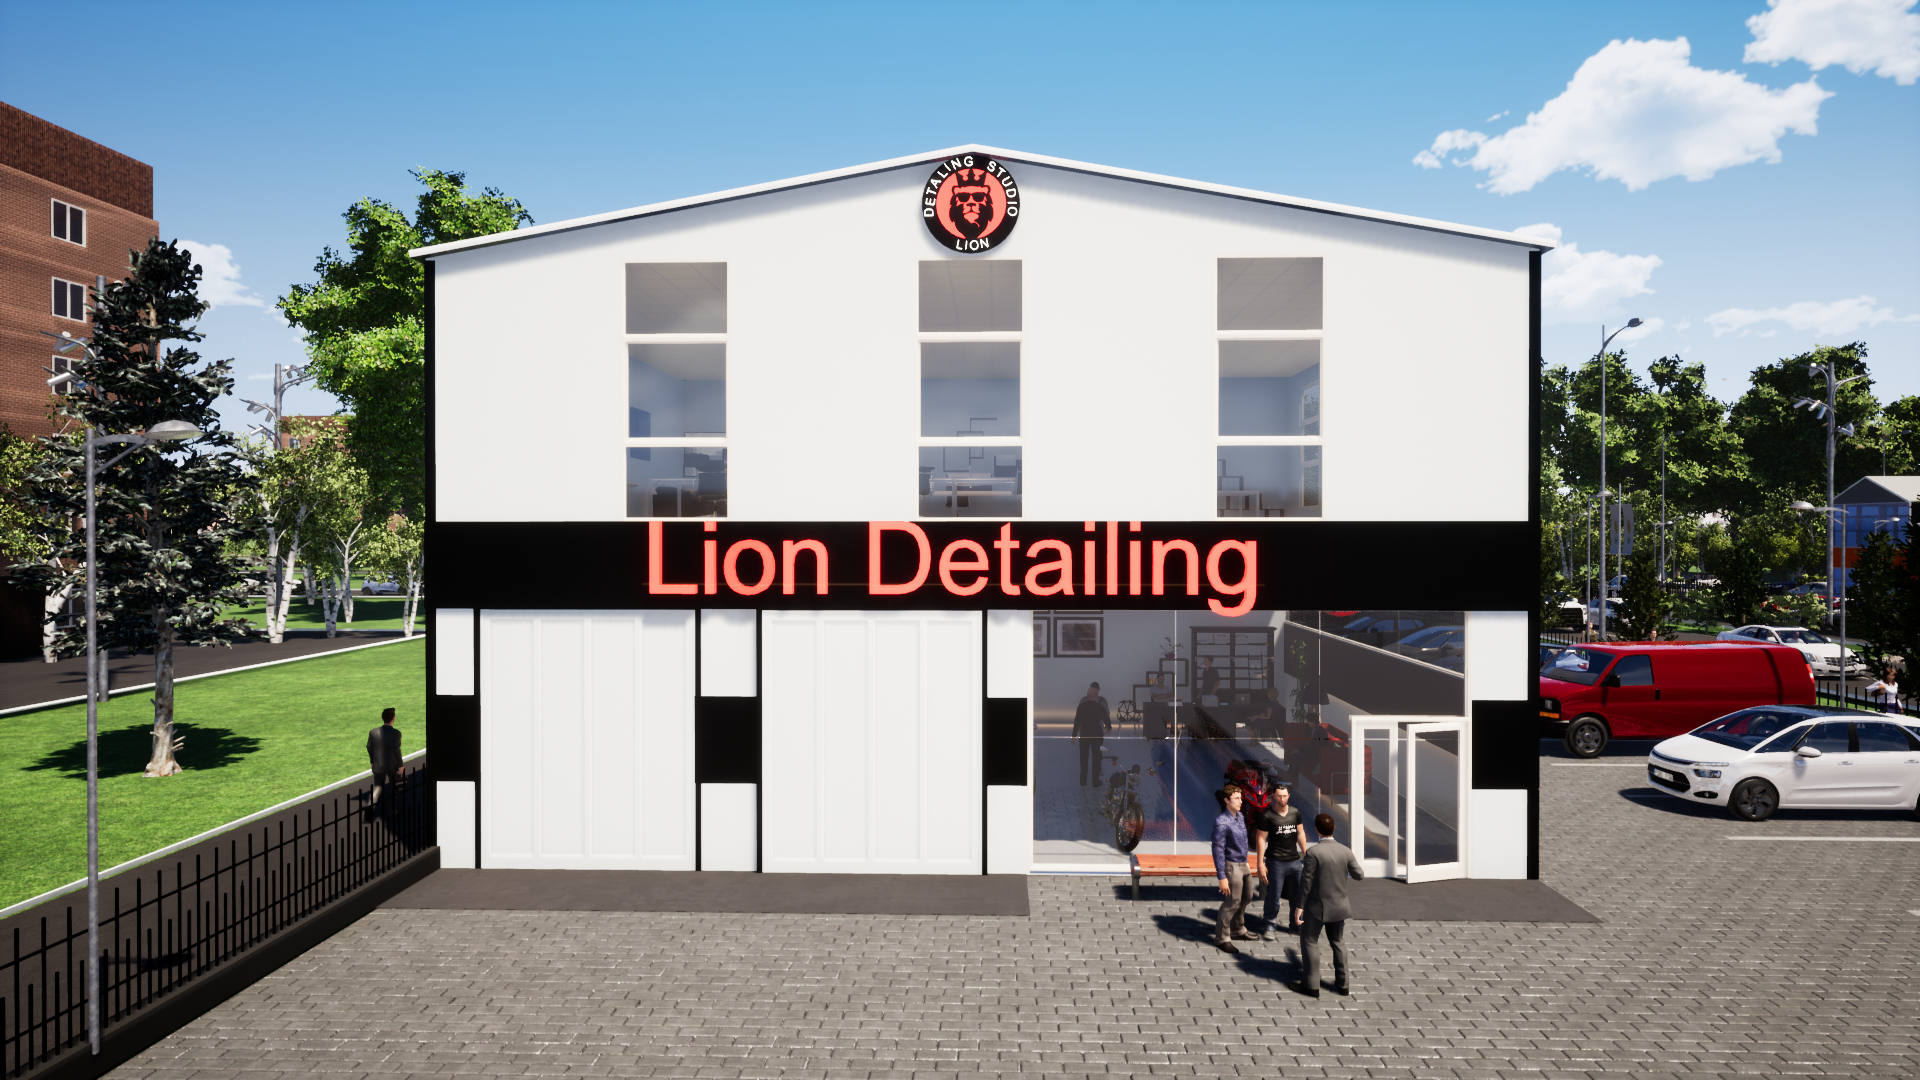 LION Detailing studio - Высокий уровень обслуживания гарантирован. Detailing-Полировка это услуга направленная на восстановление лакокрасочного покрытия автомобиля. При помощи премиальных материалов.